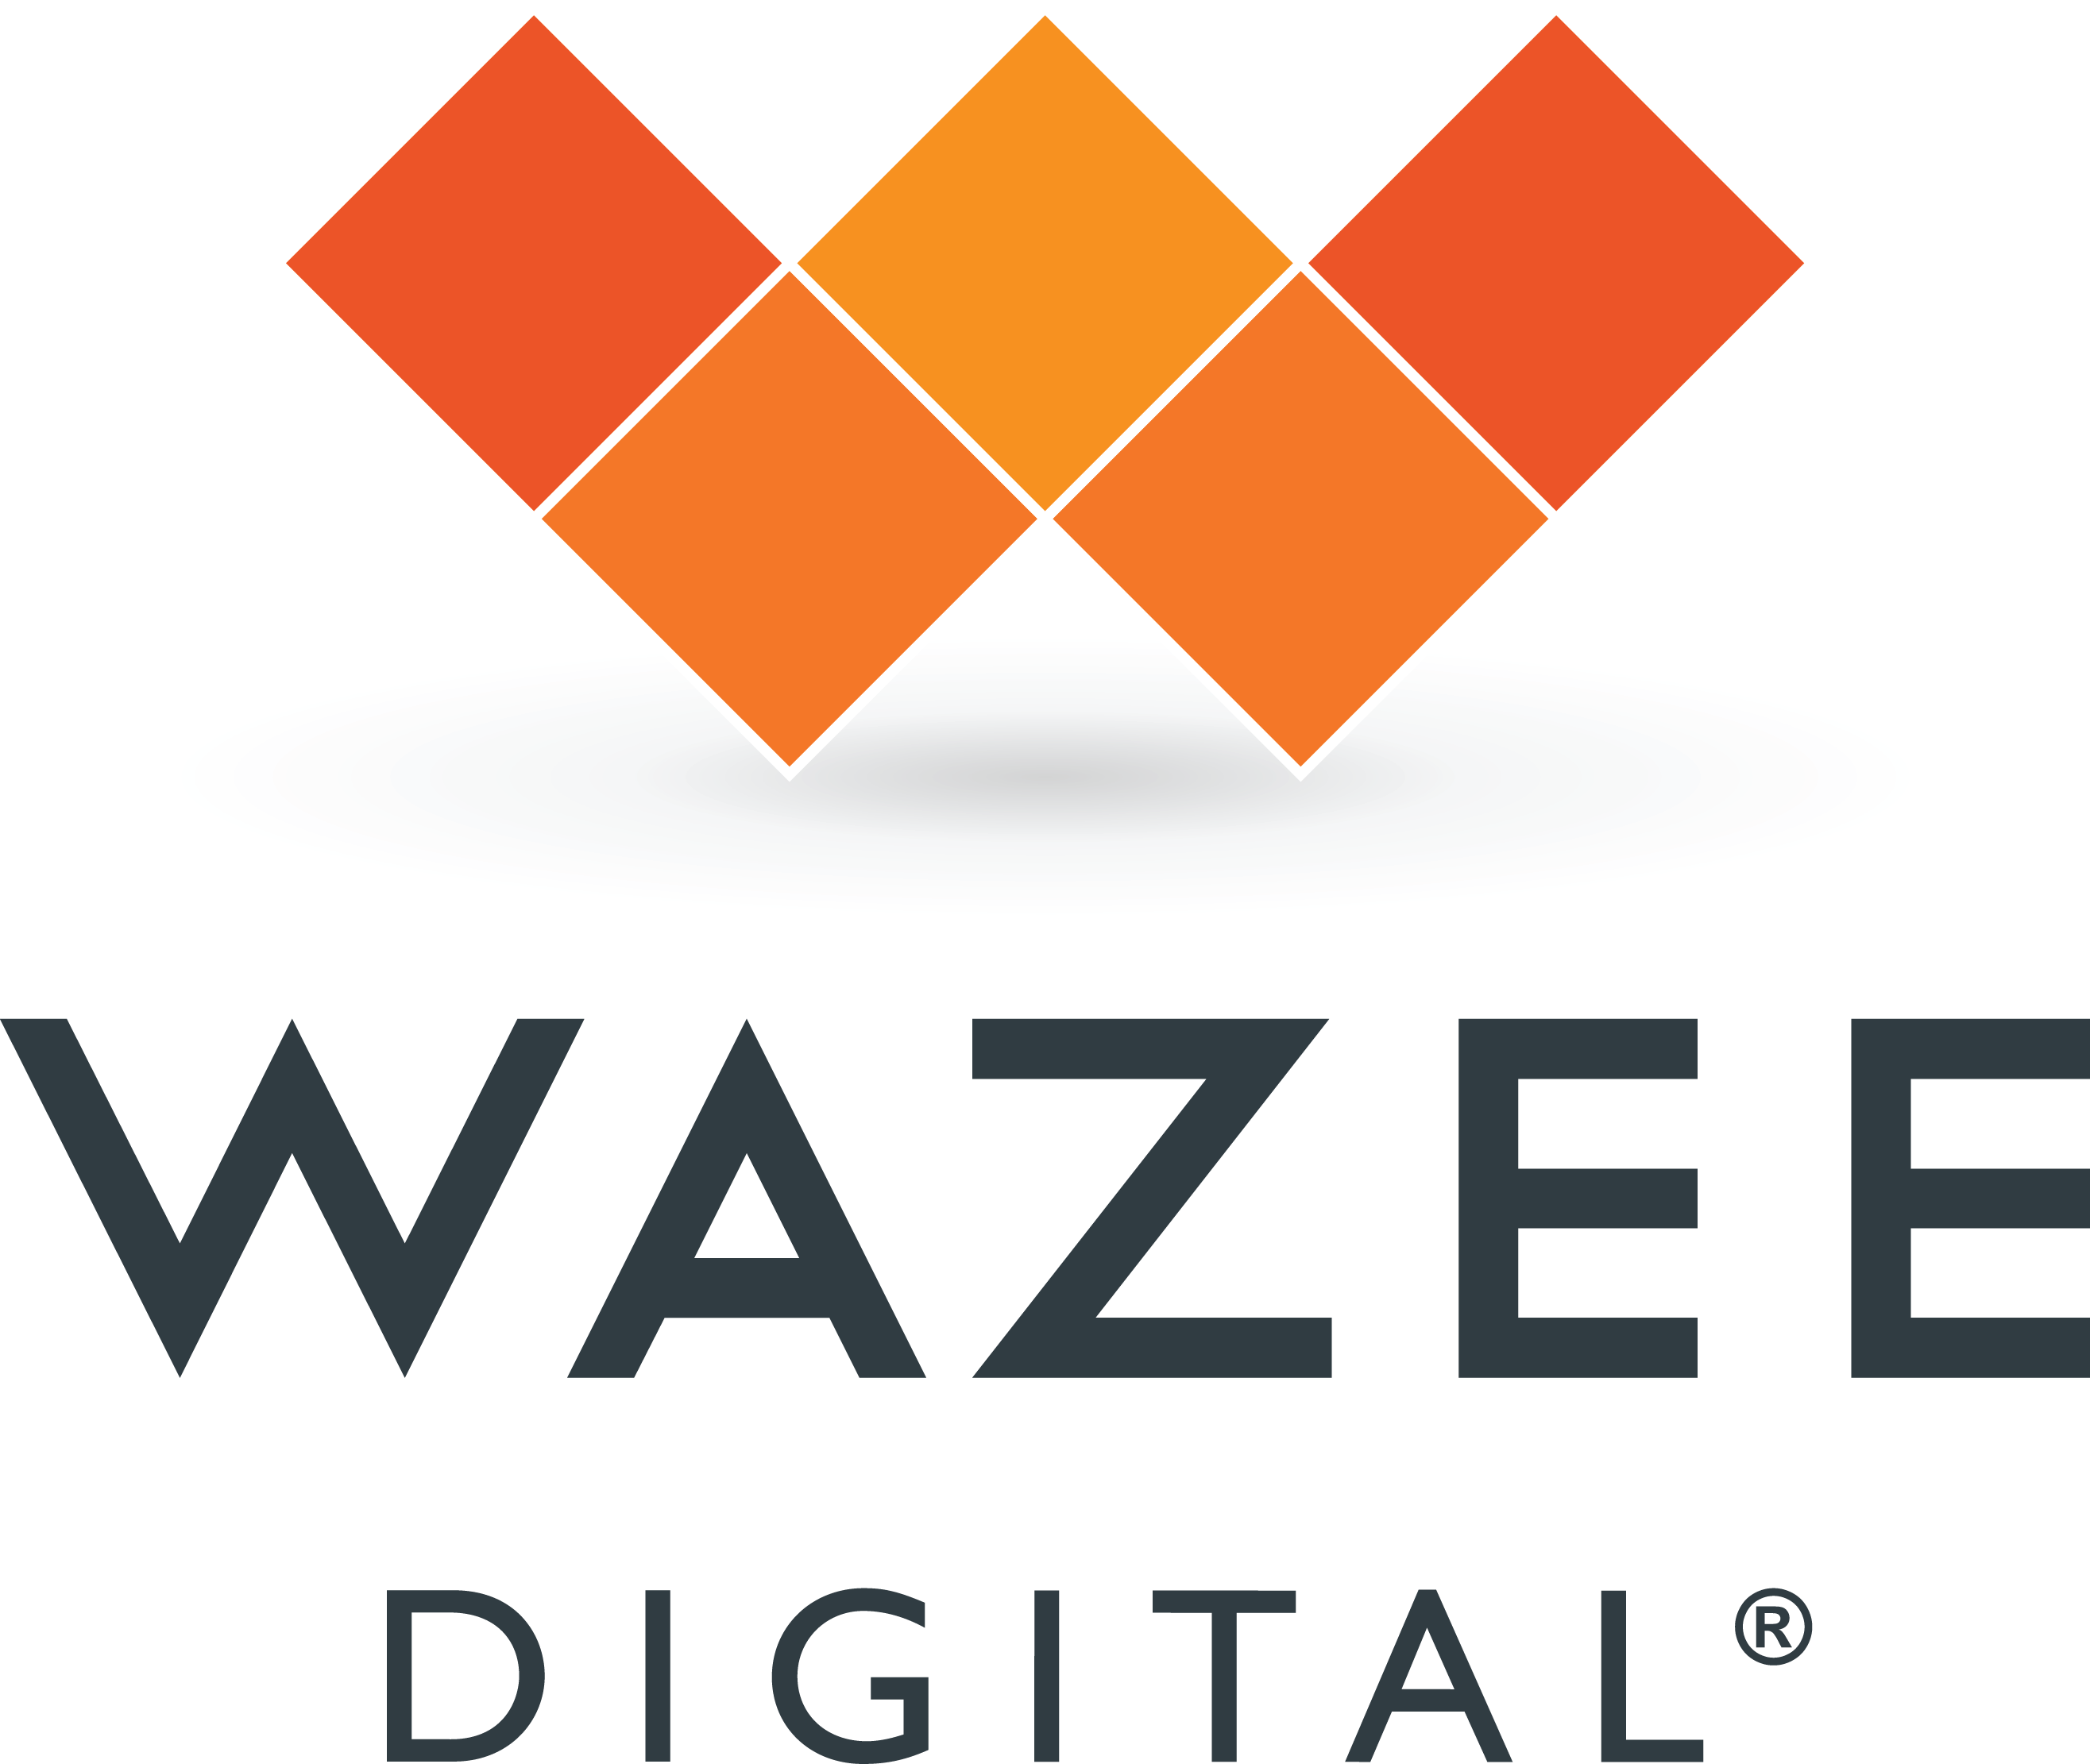 Wazee Digital and Ve